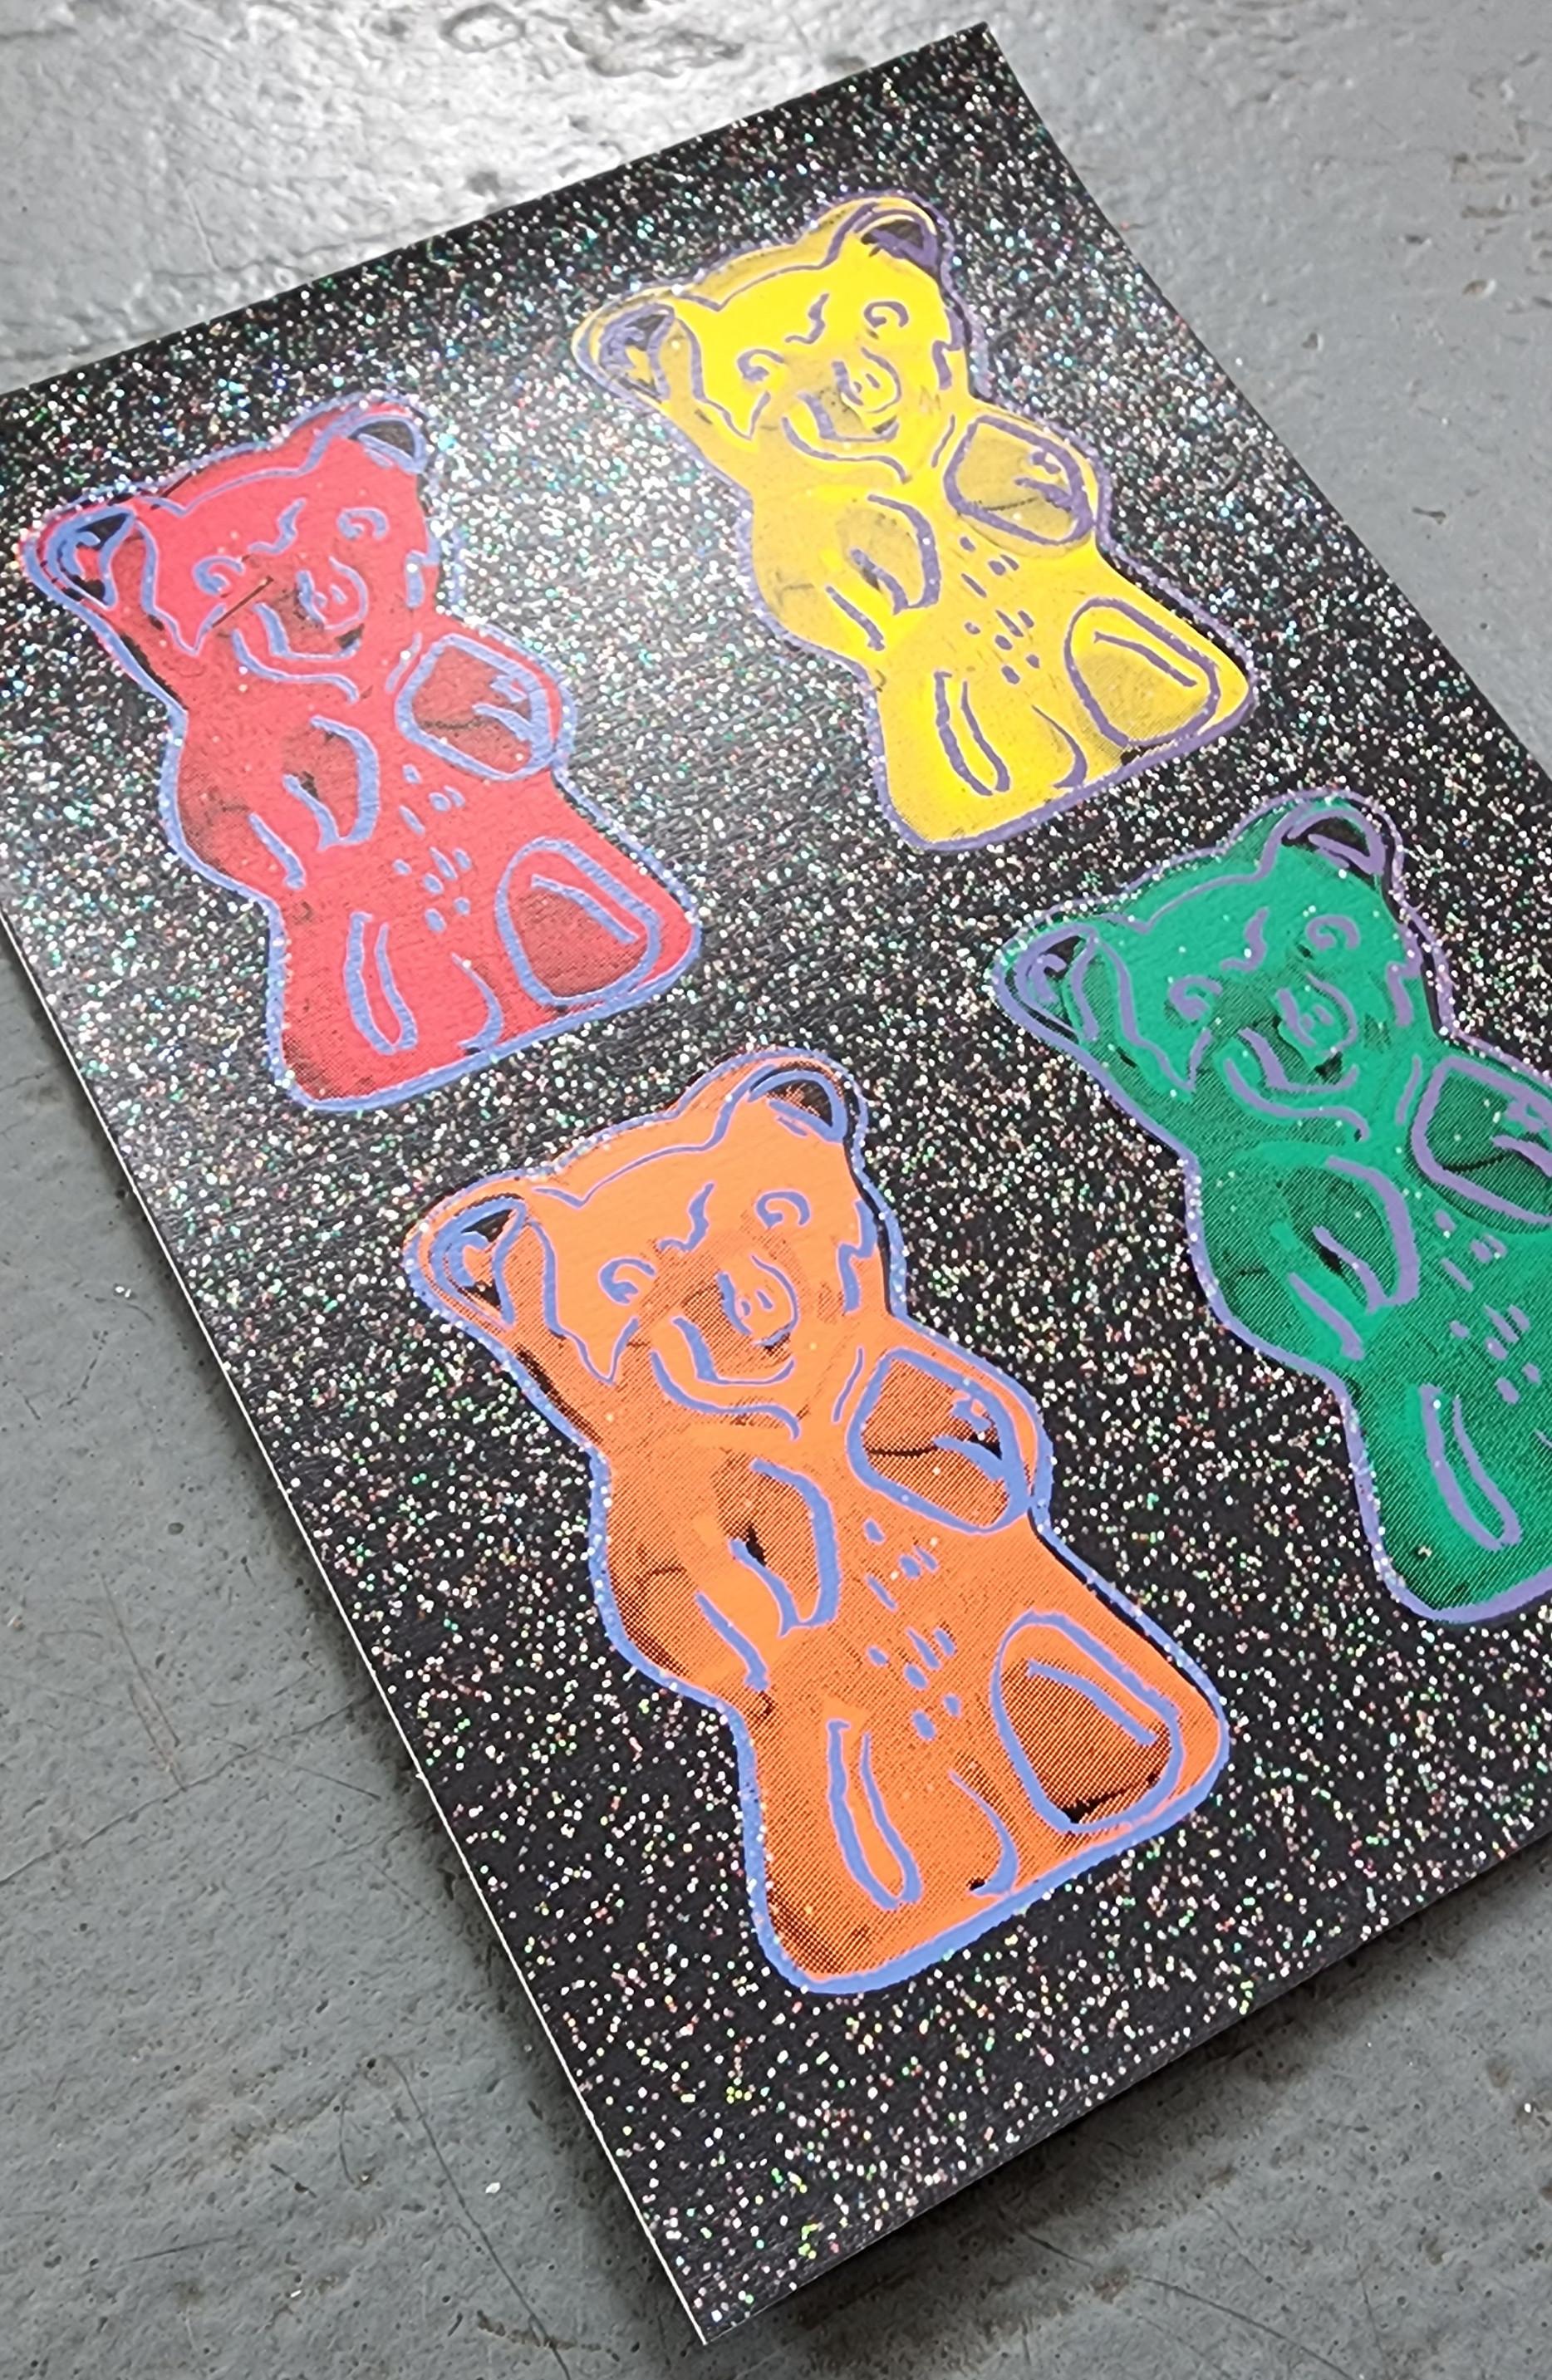 Gummi Bears #2 + Glitter, Small - BLACK (Pop Art, Warhol) (~50% OFF LIST PRICE) For Sale 1